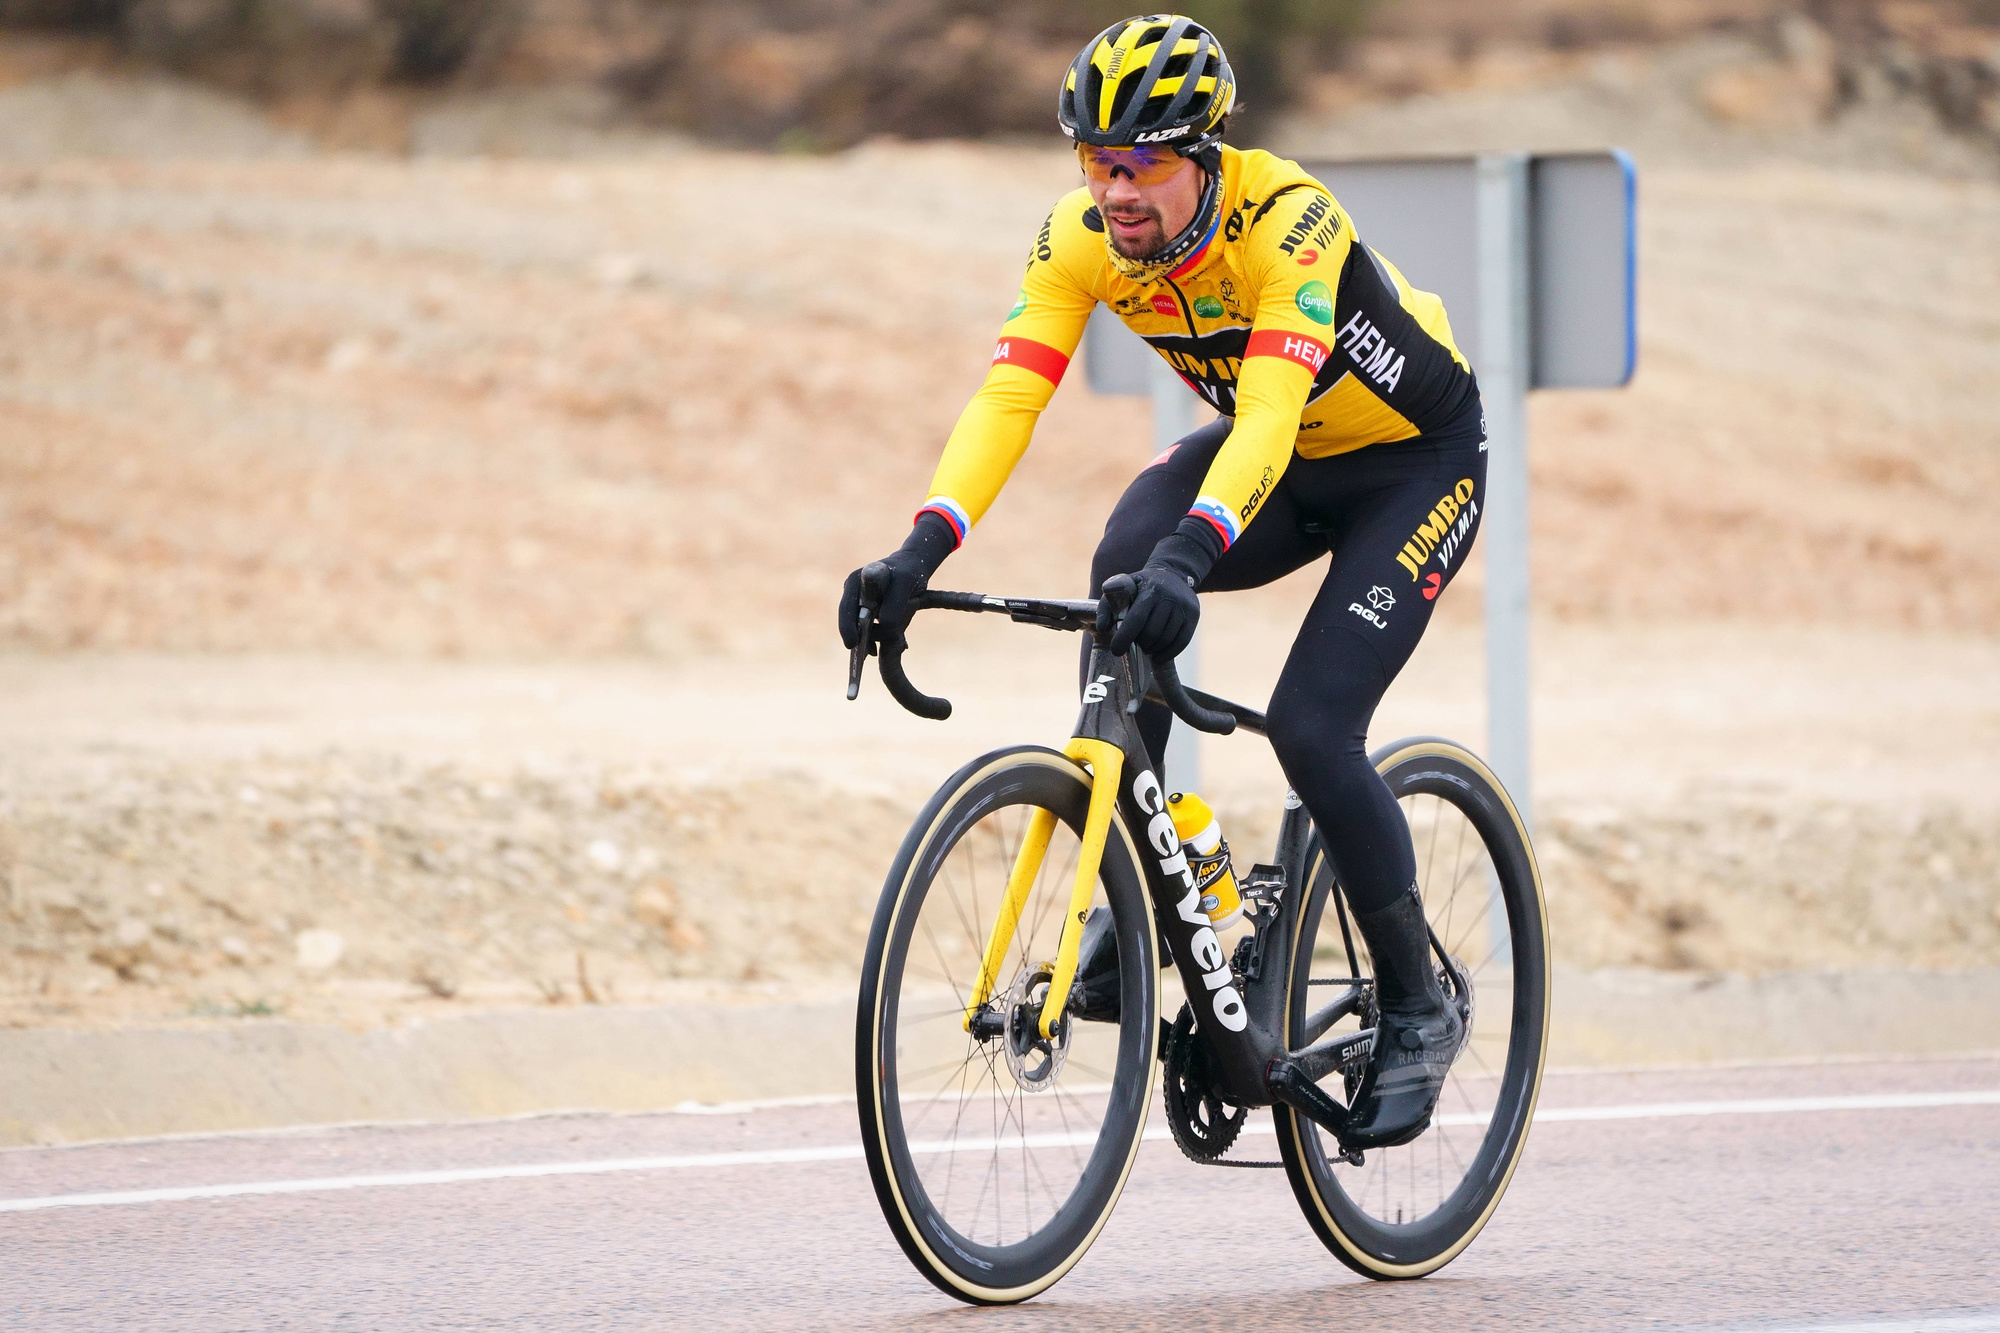 Dépossédé de sa tunique jaune sur l'avant-dernière étape du Tour 2020, contraint à l'abandon l'an dernier, Primoz Roglic espère enfin arriver sur la plus haute marche du podium lors du prochain Tour de France., iStock